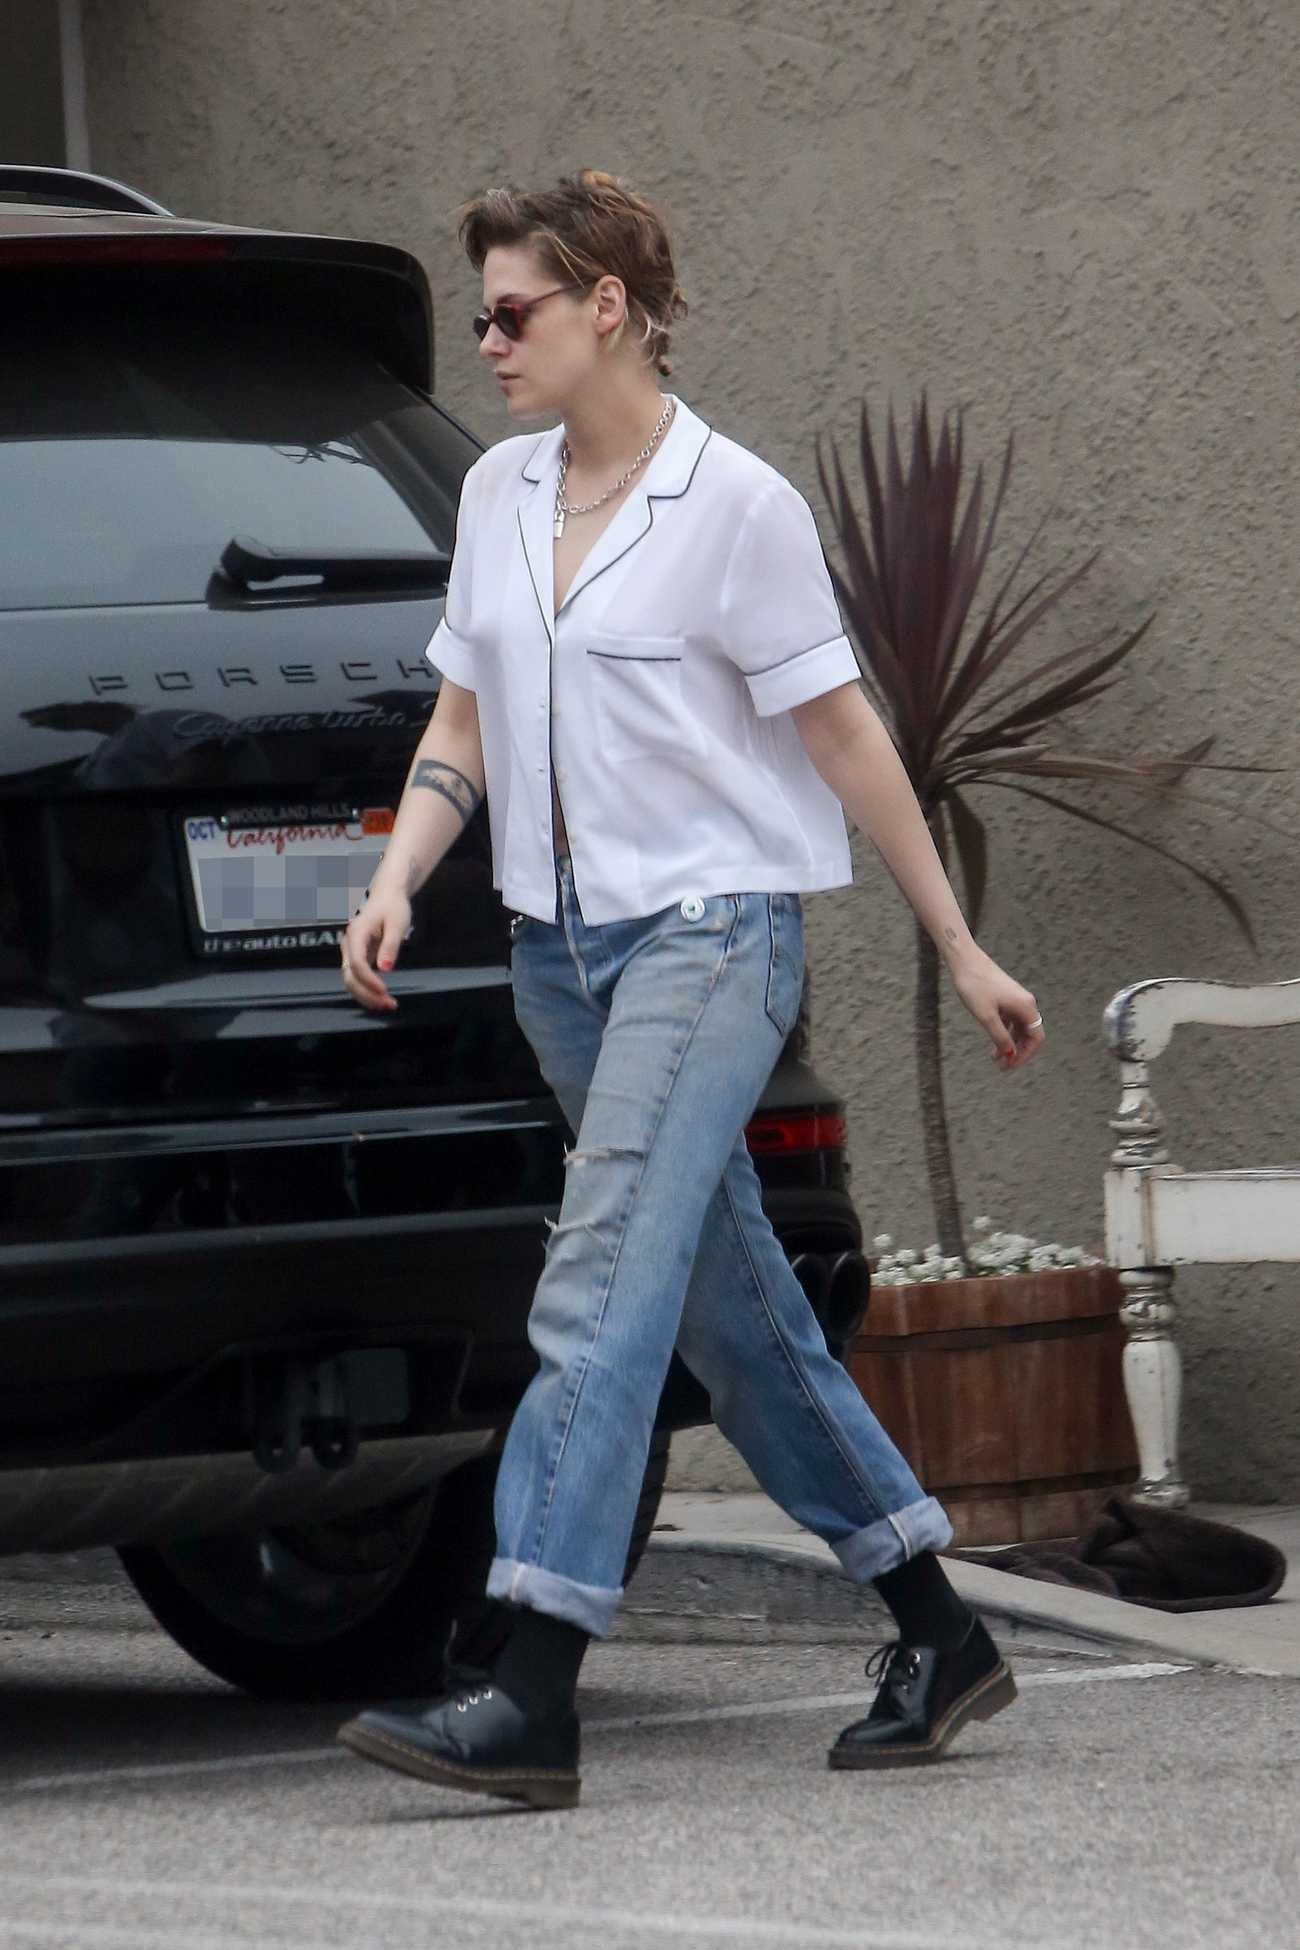 Kristen Stewart cùng người yêu đồng giới diện áo mát mẻ, thả rông vòng 1 trên phố - Ảnh 3.